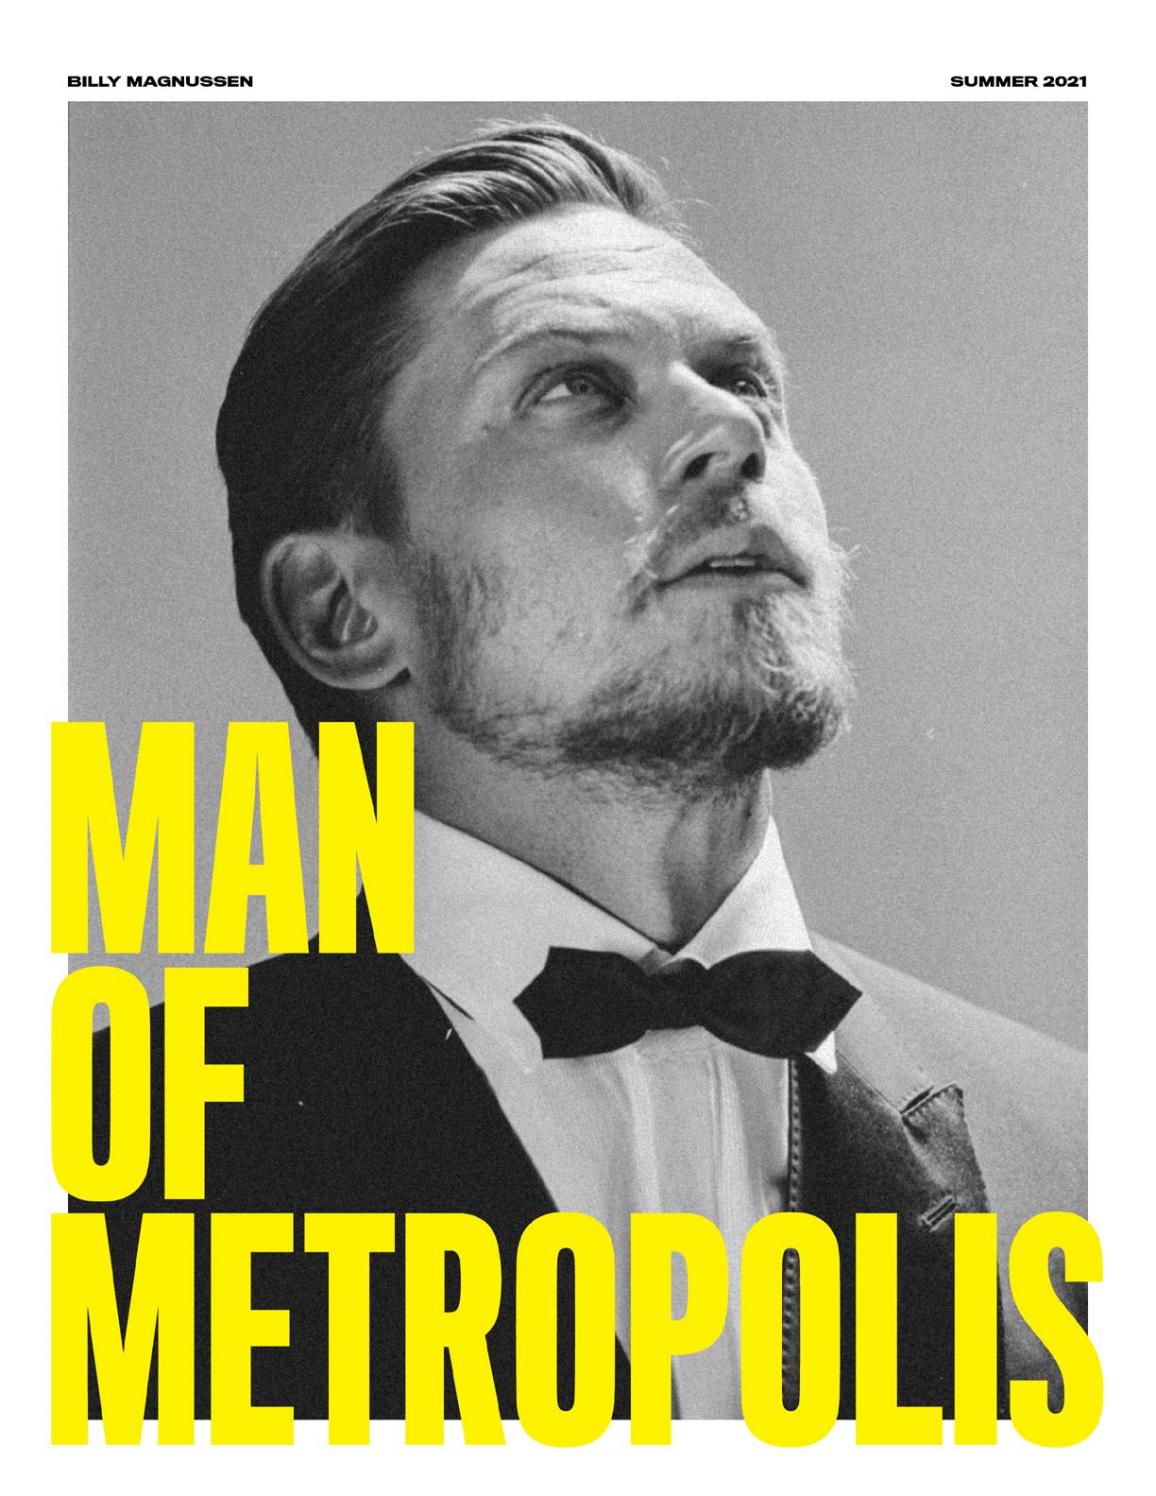 Man of Metropolis: Billy Magnussen, Summer 2021